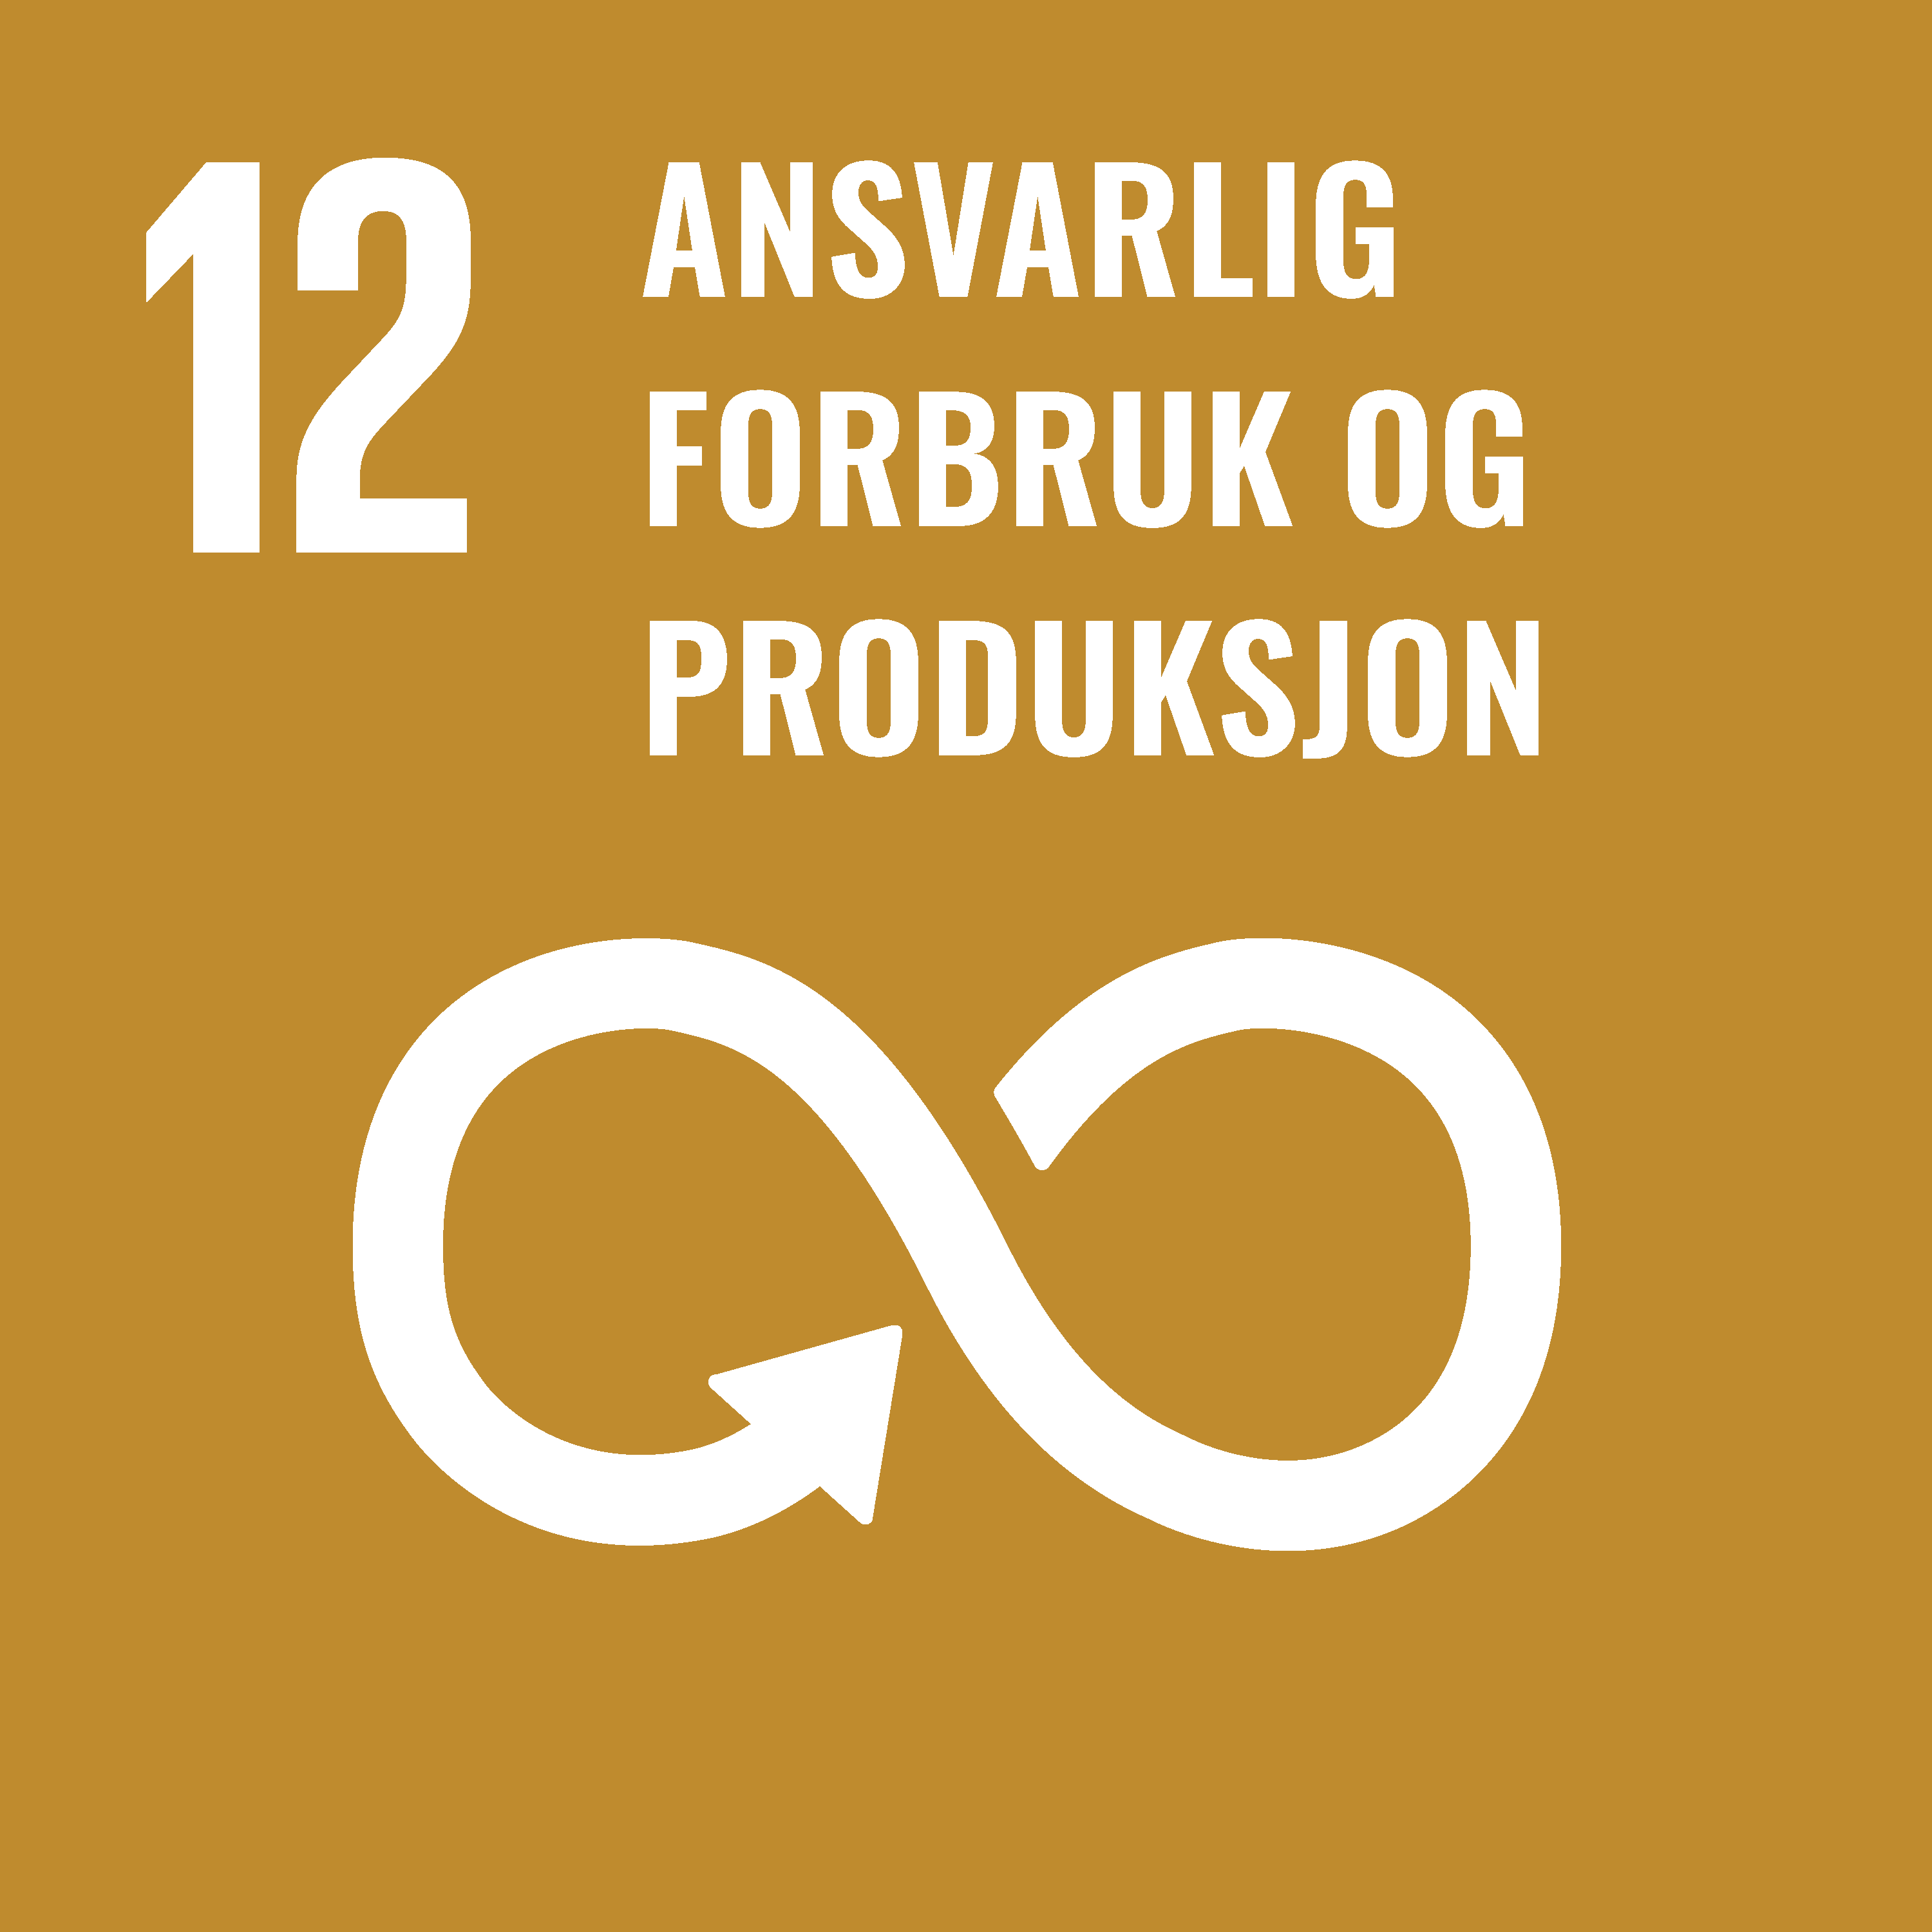 FNs bærekraftsmål nummer 12 er ansvarlig forbruk og produksjon